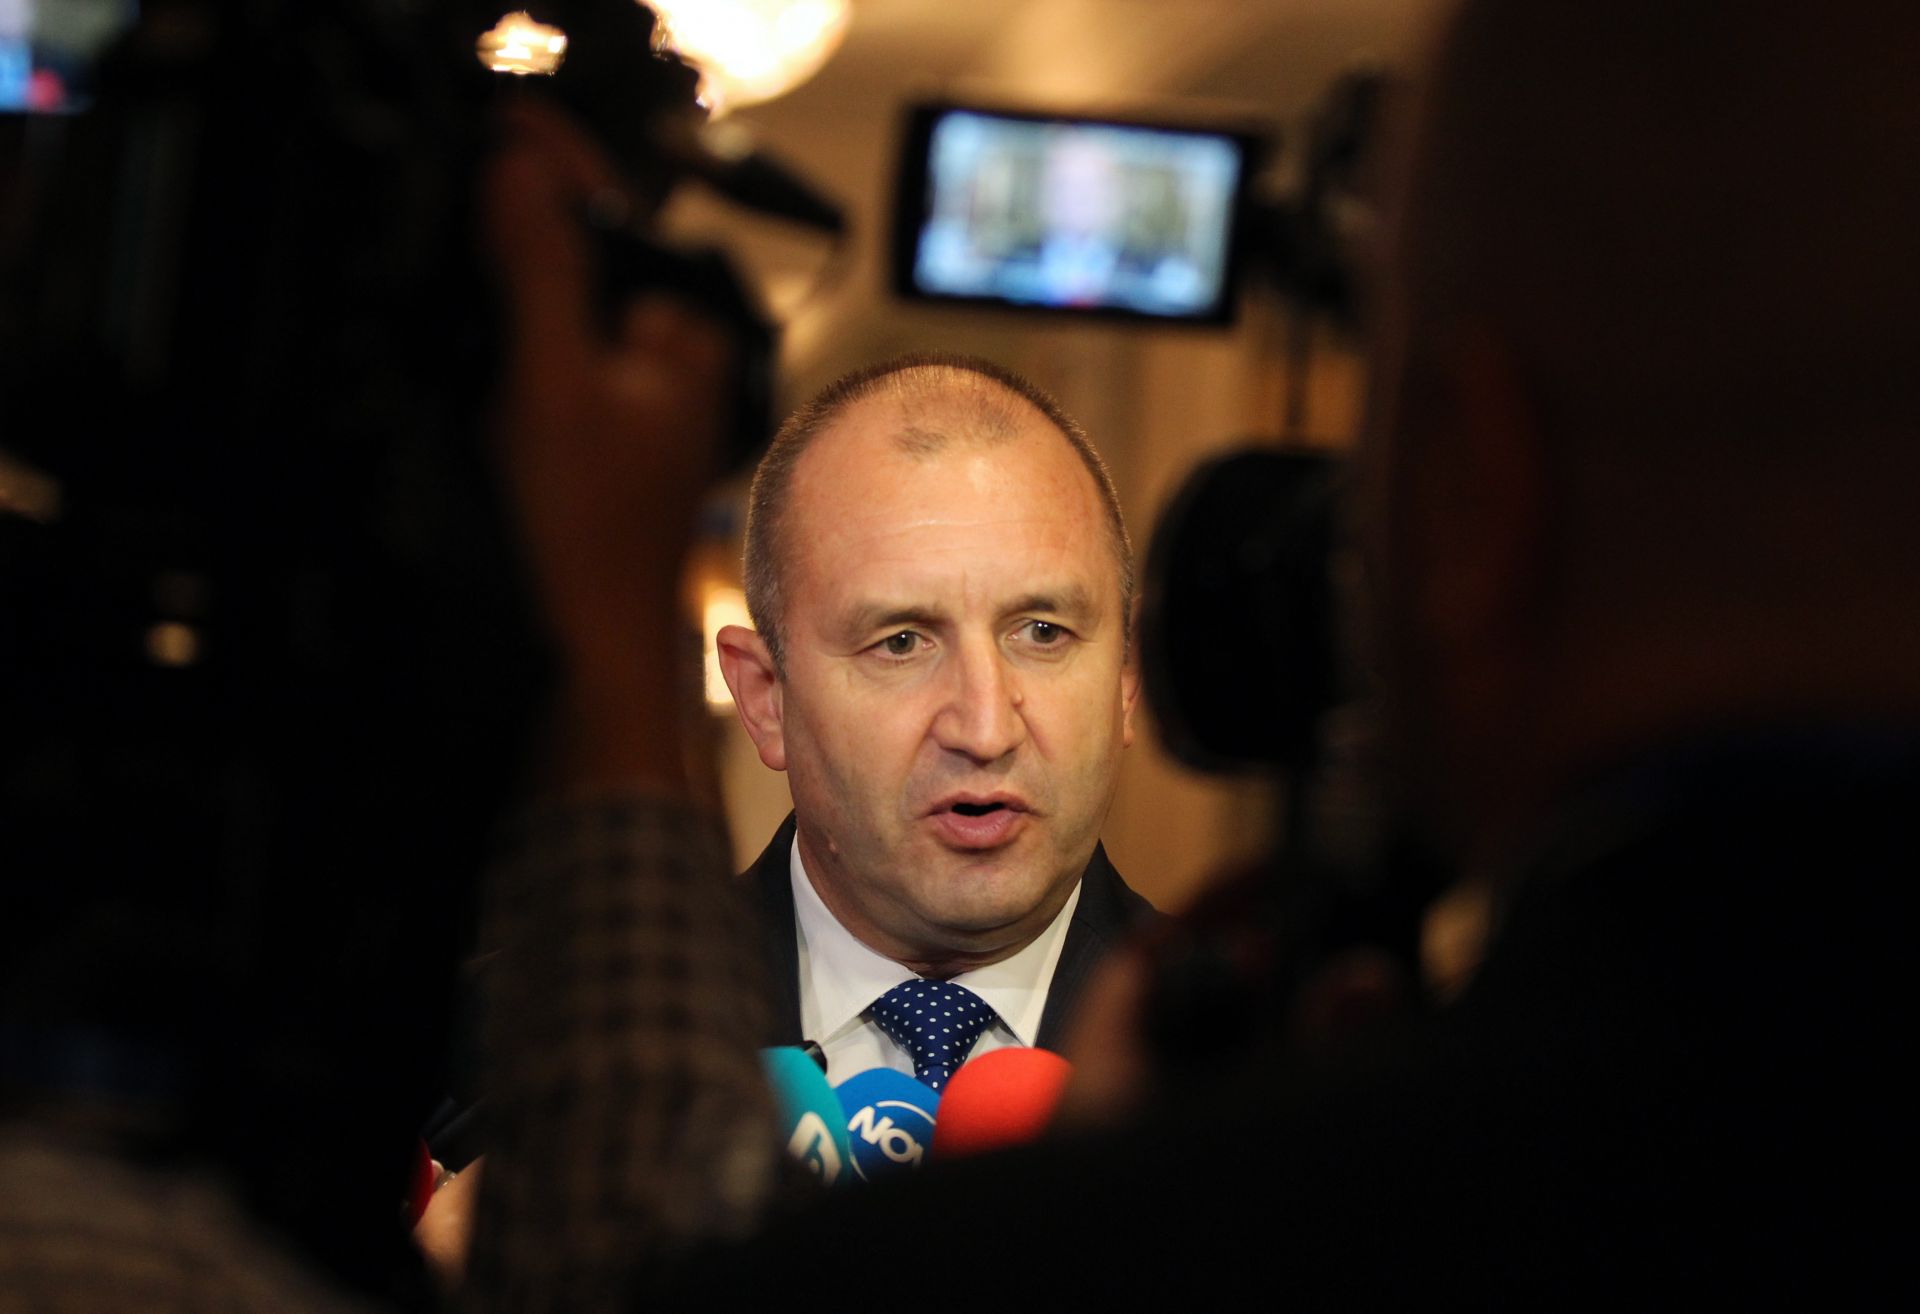 Според президента сделката може да загуби смисъл, ако не са изпълнени всички искани от България параметри